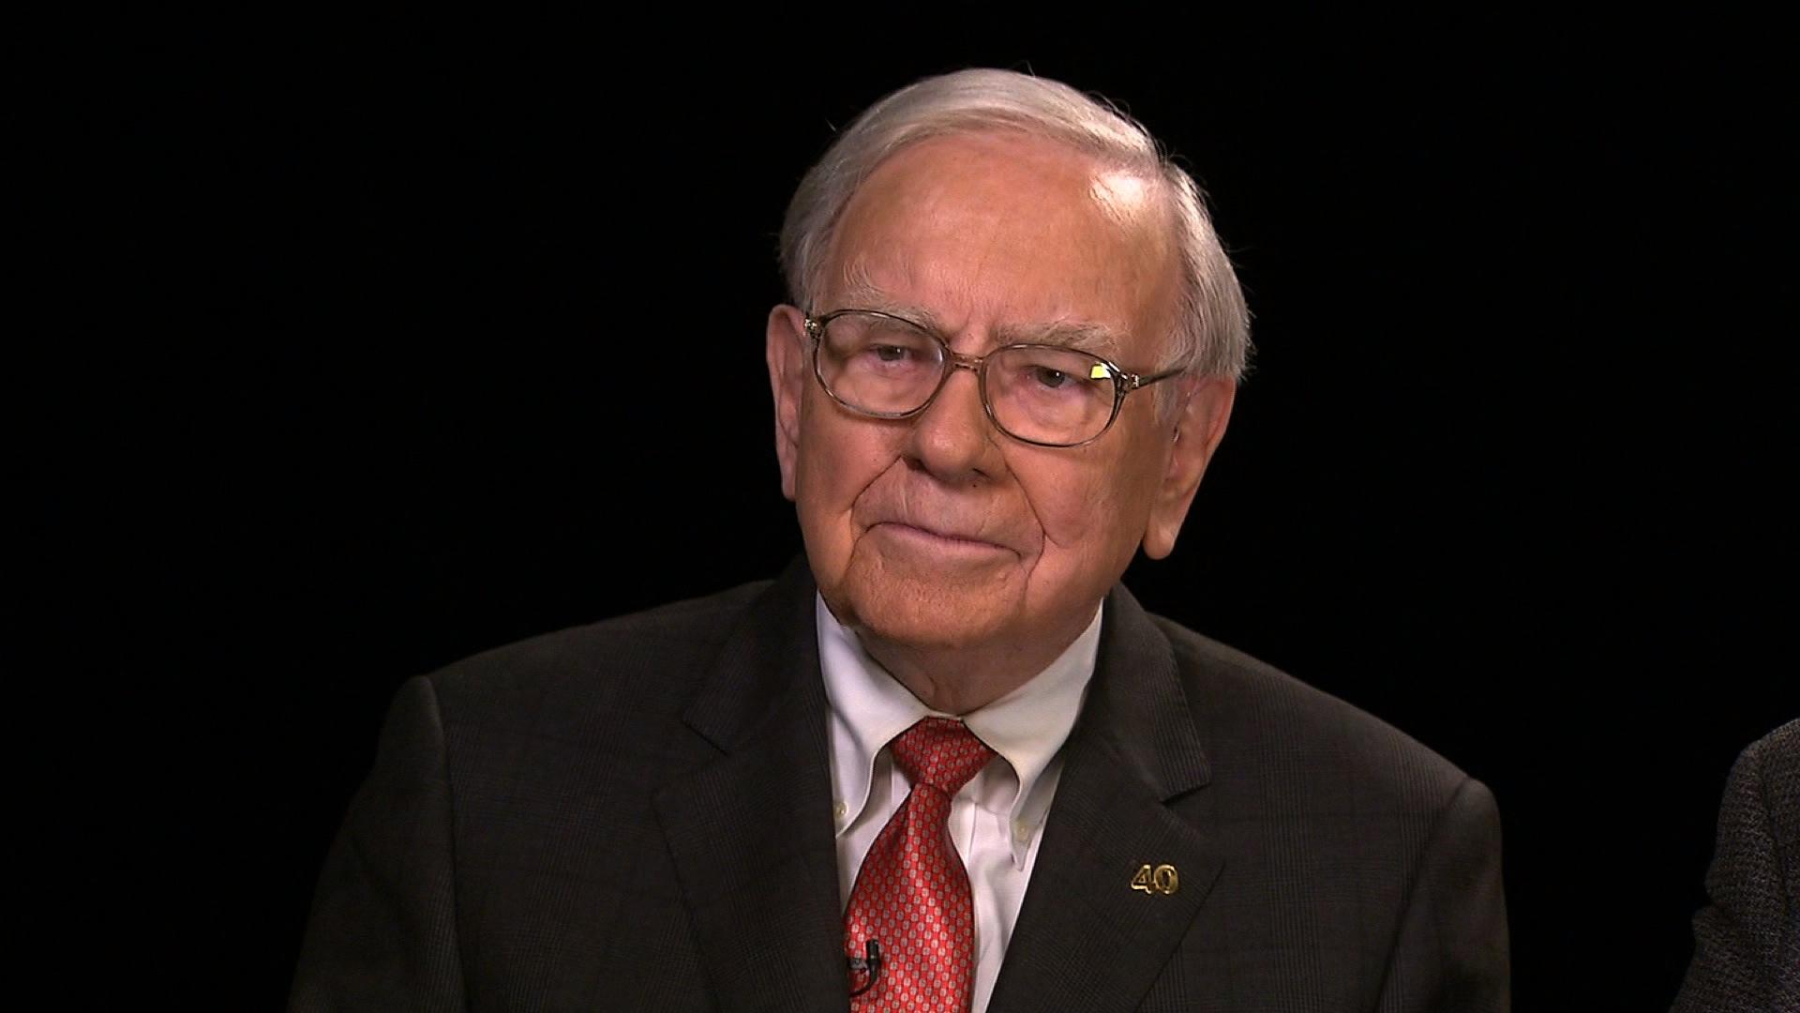 'Warren Buffet made a huge blunder with Bitcoin'
